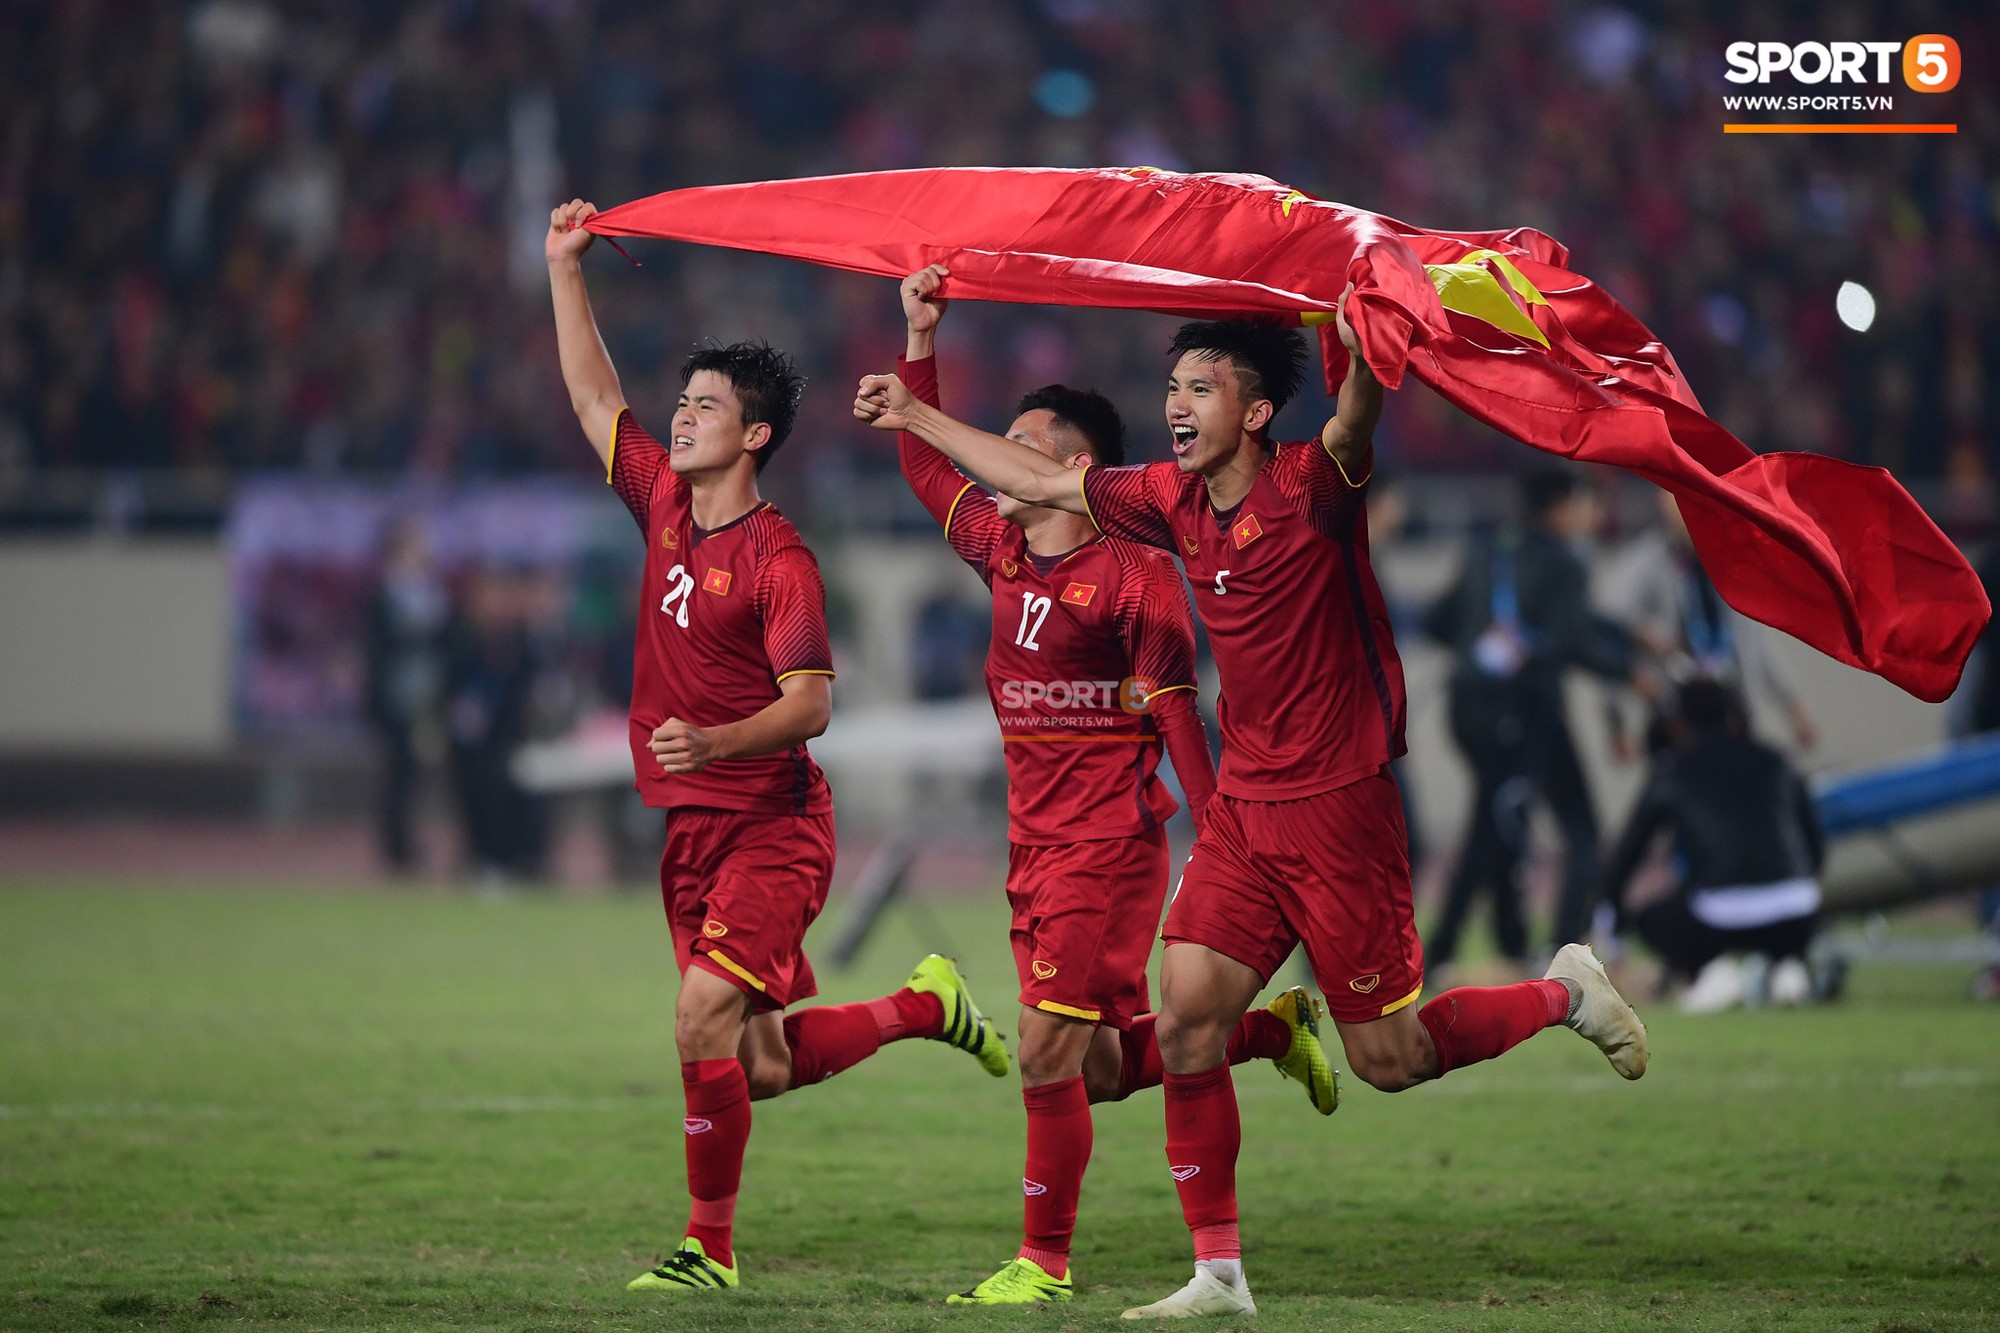 Chưa thi đấu, đội tuyển Việt Nam đã lập liên tiếp kỷ lục tại Asian Cup 2019-1